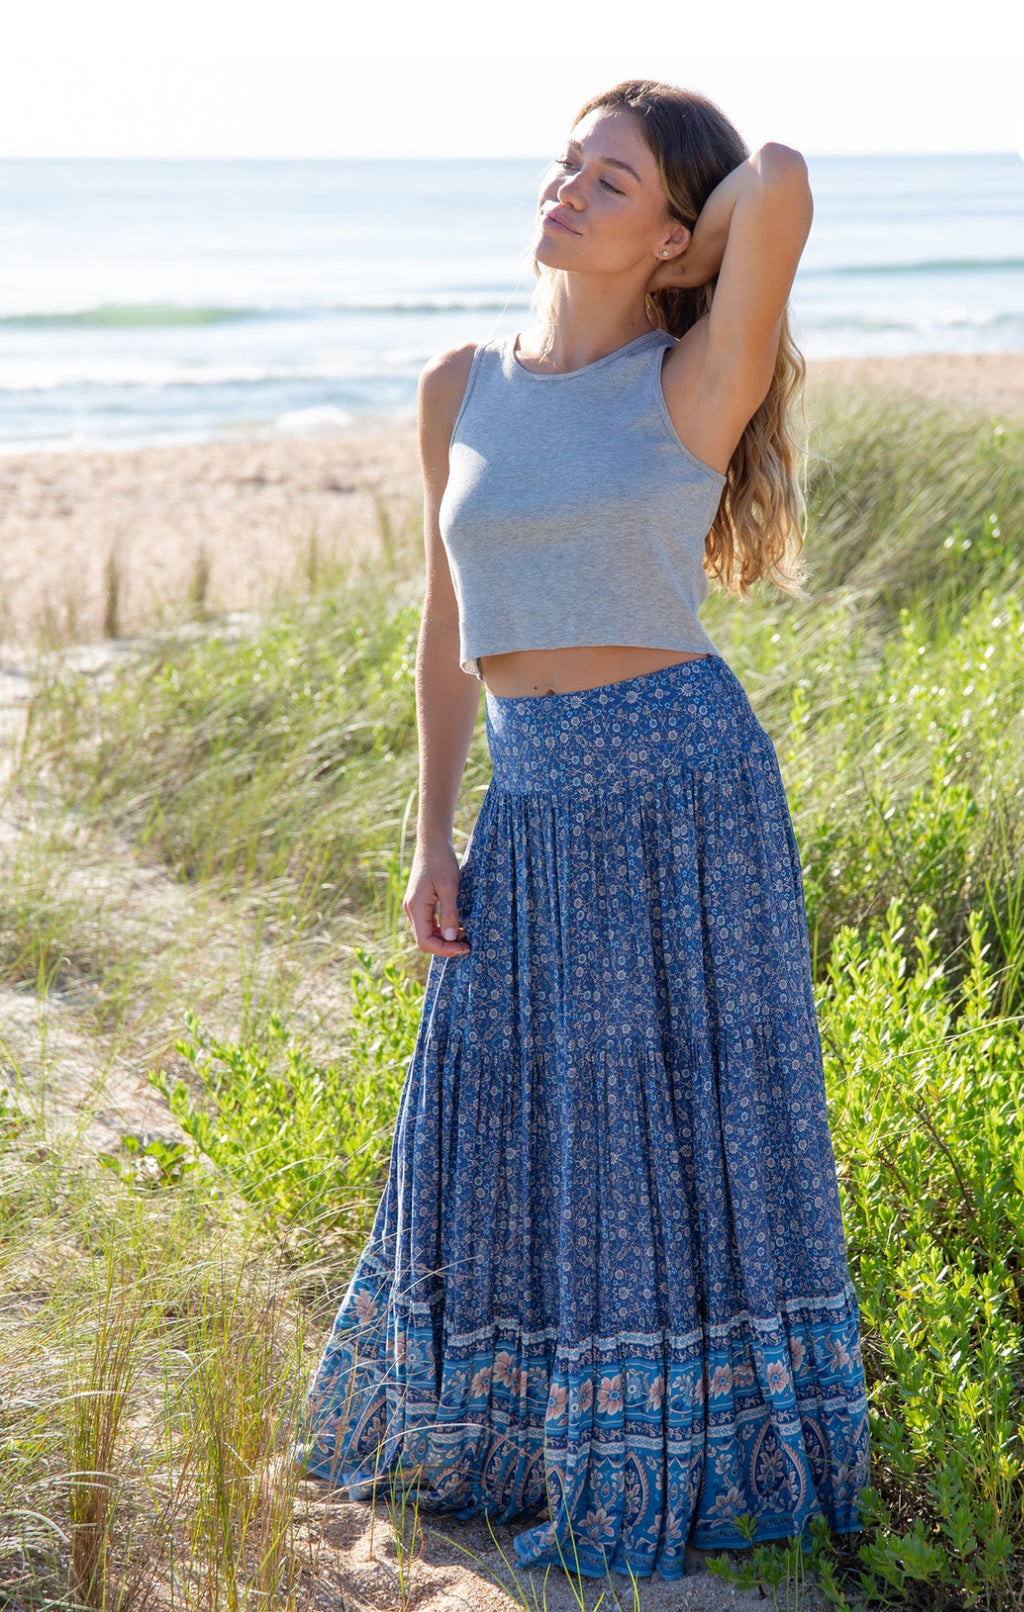 Natural Life Hanna Convertible Maxi Skirt - Blue Floral Border